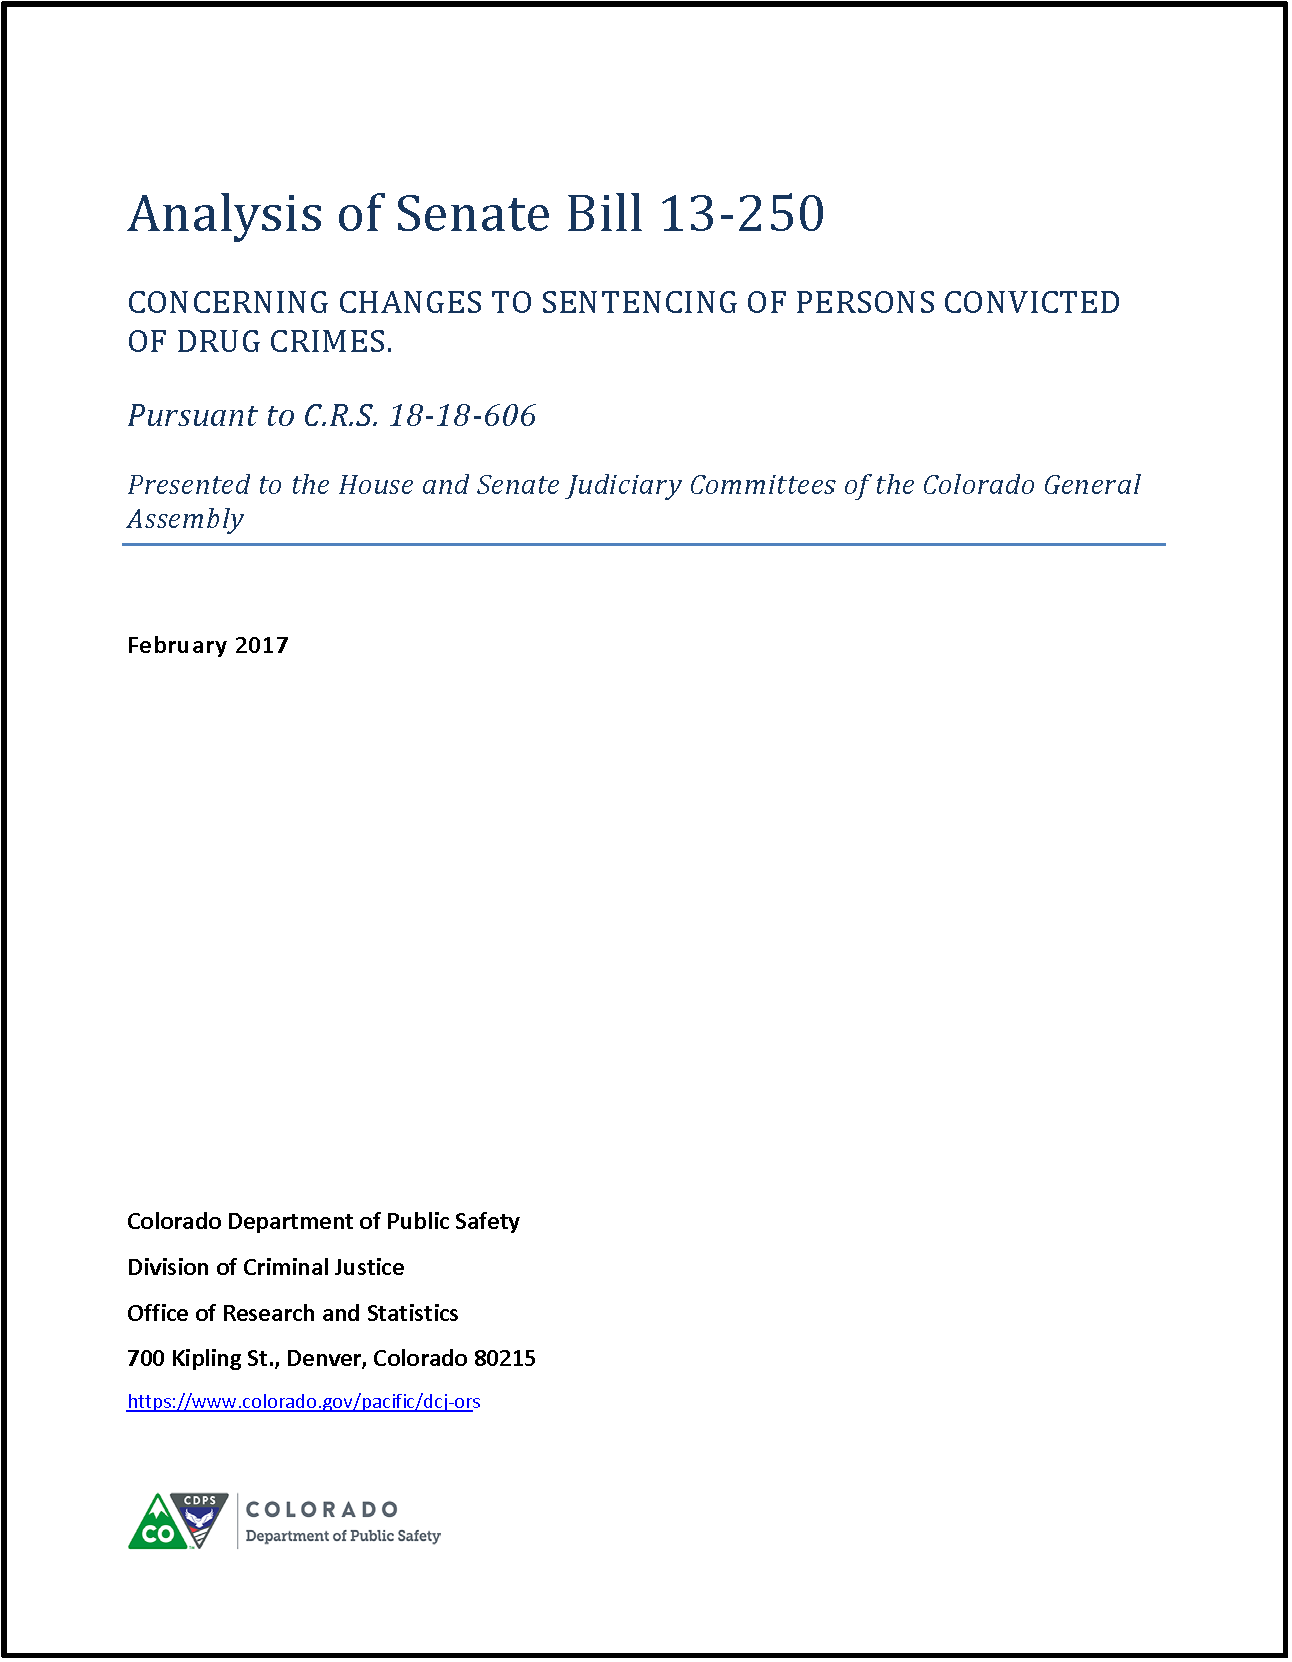 Analysis of Senate Bill 13-250 (February 2017)